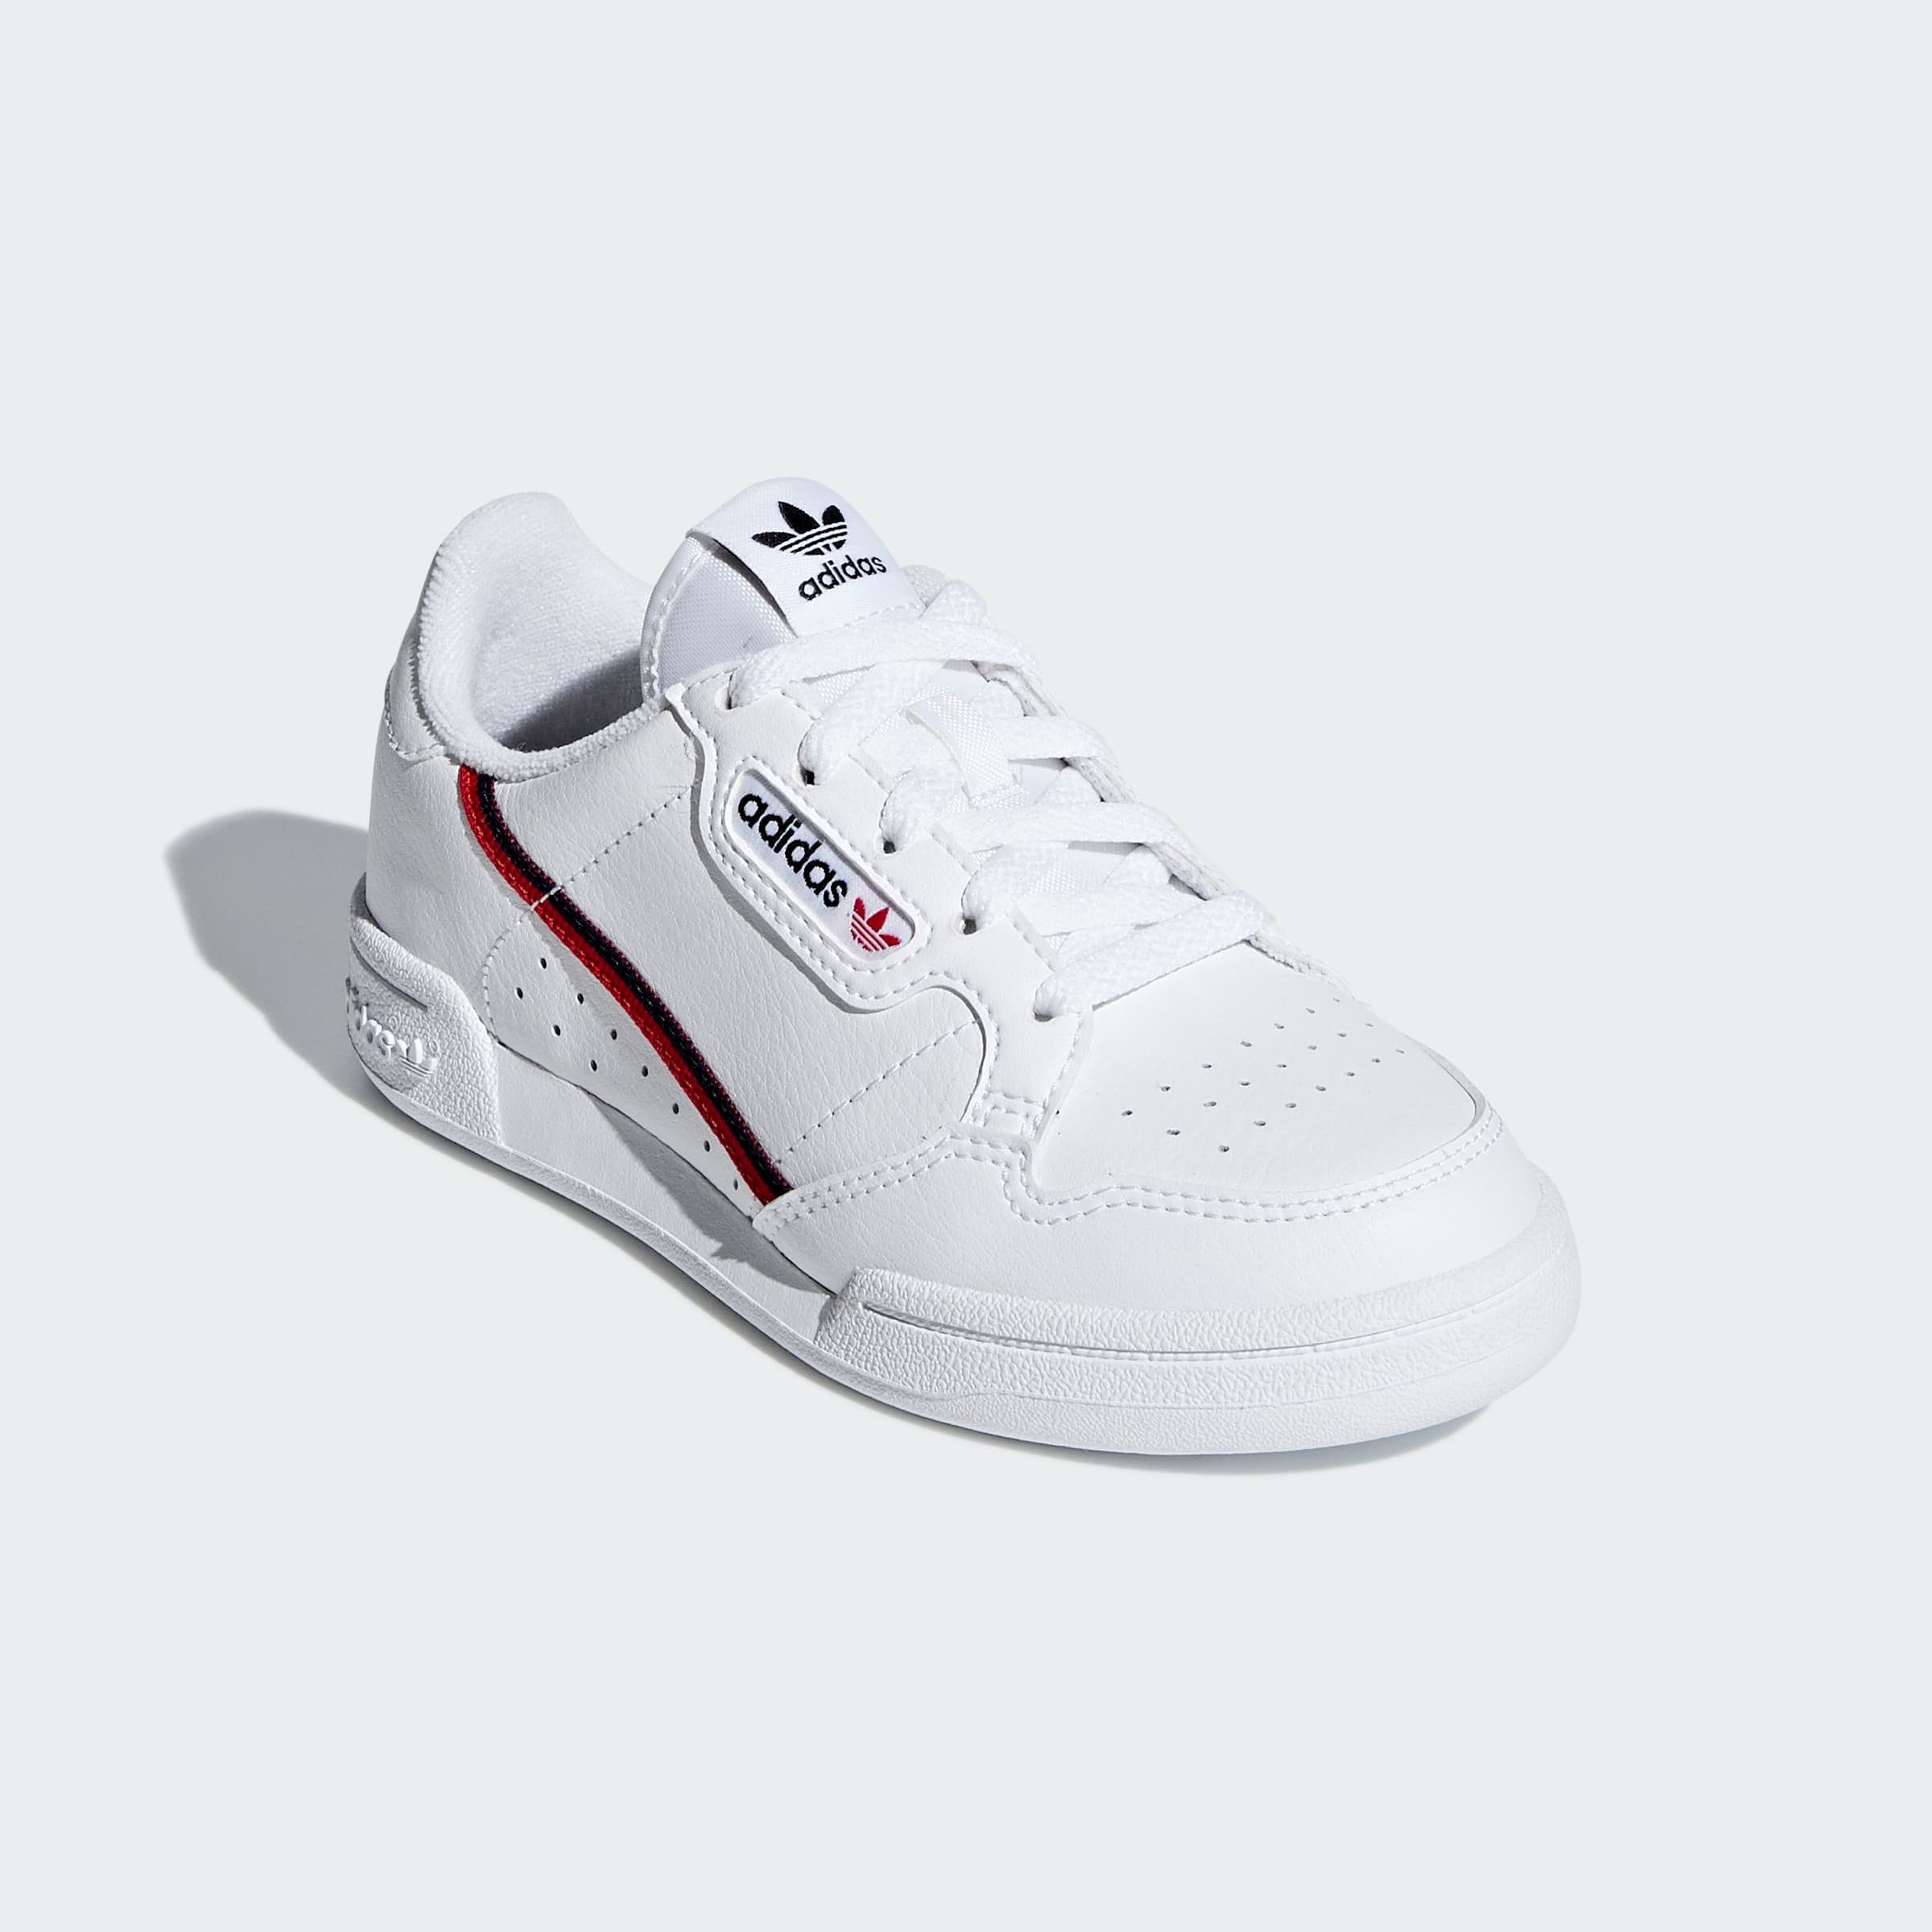 adidas Originals »CONTINENTAL 80« Sneaker kaufen | OTTO